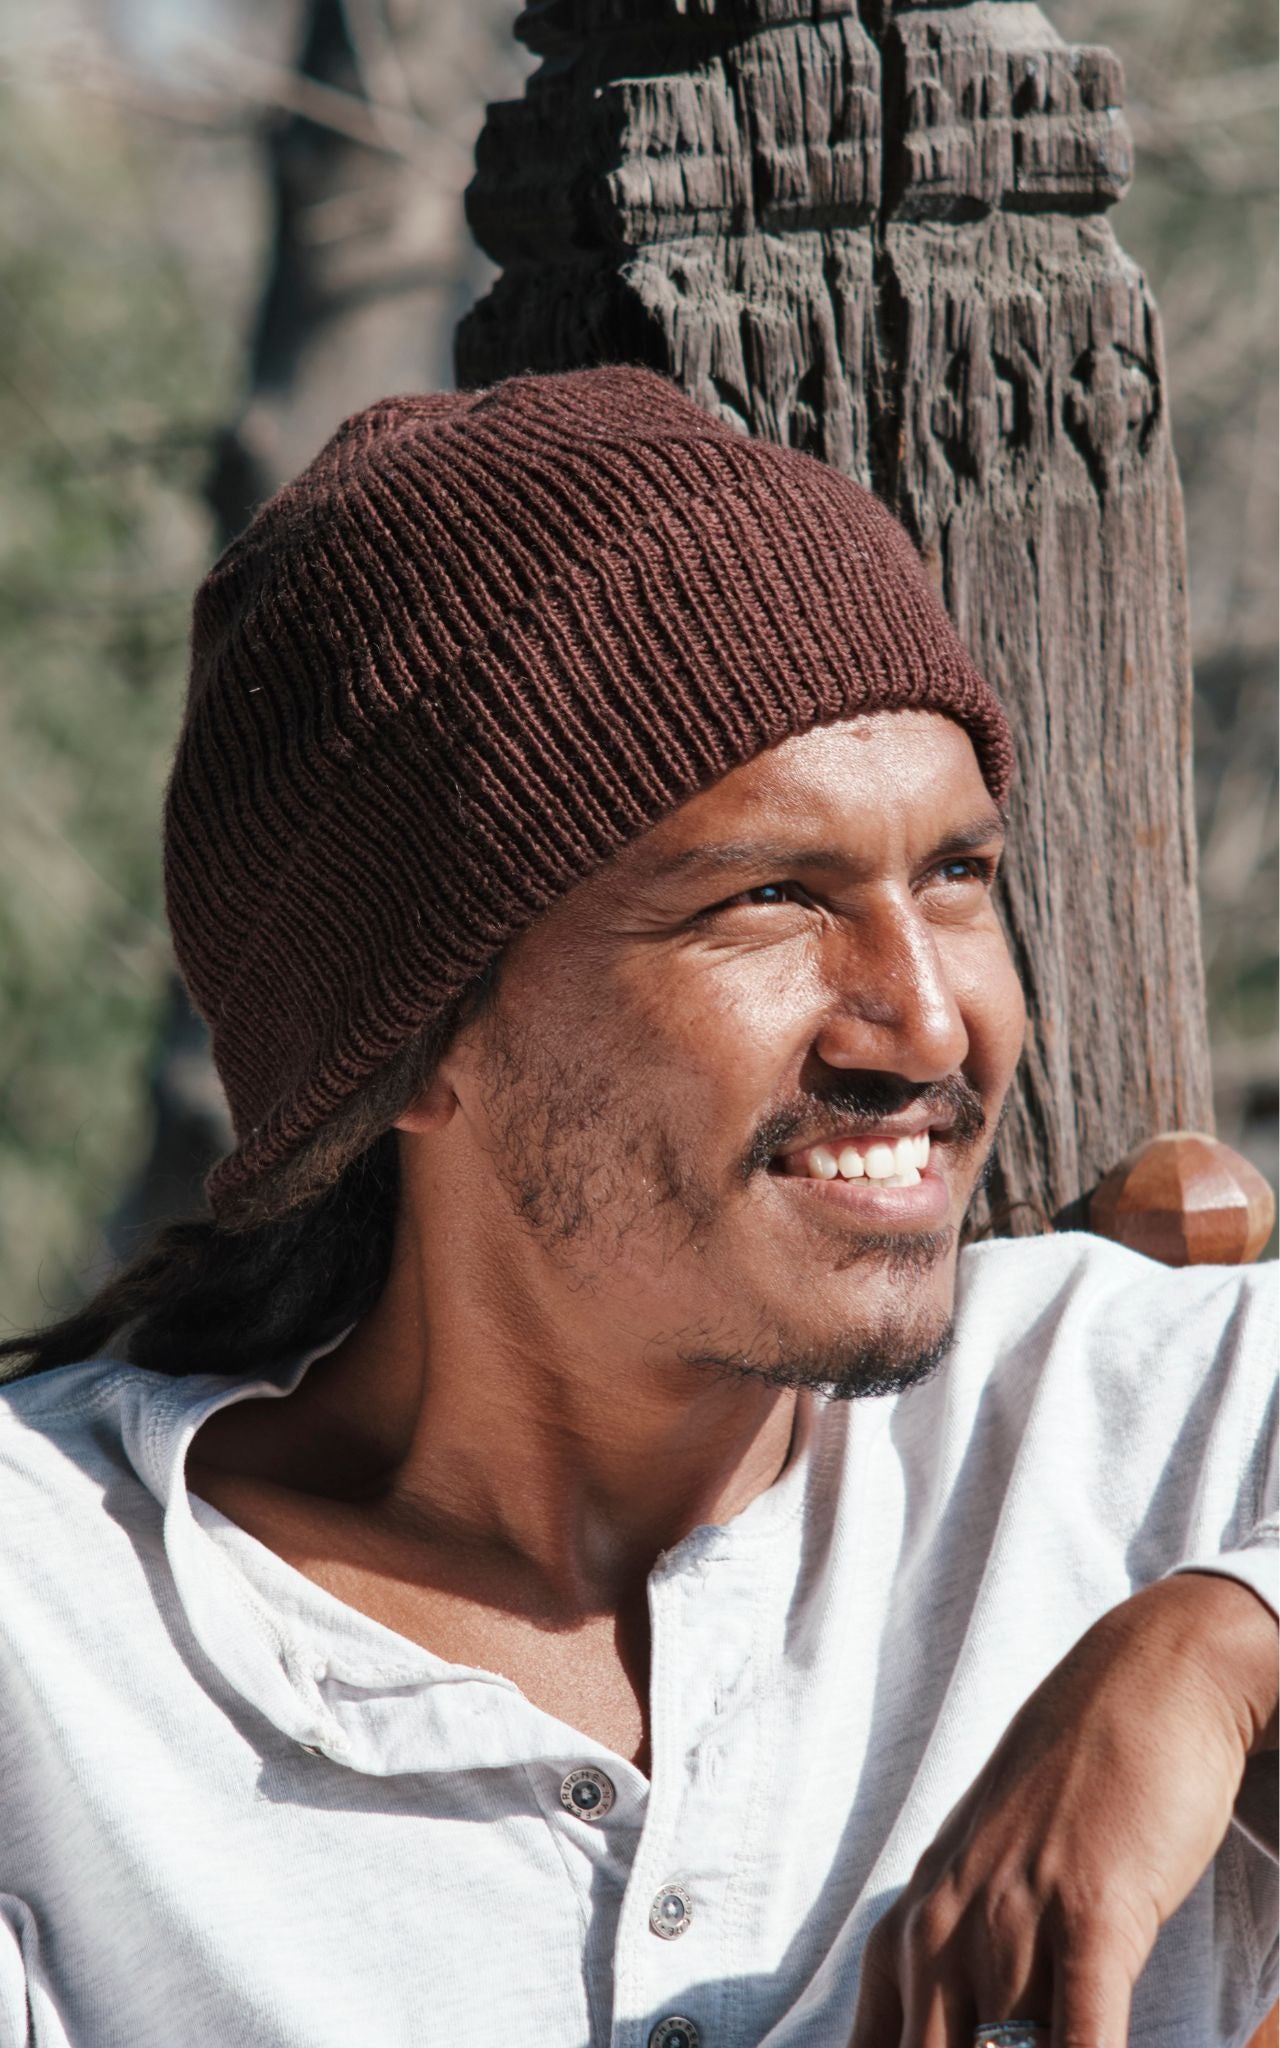 Surya Australia Merino Wool 'Fisherman' Beanie for men made in Nepal - chocolate